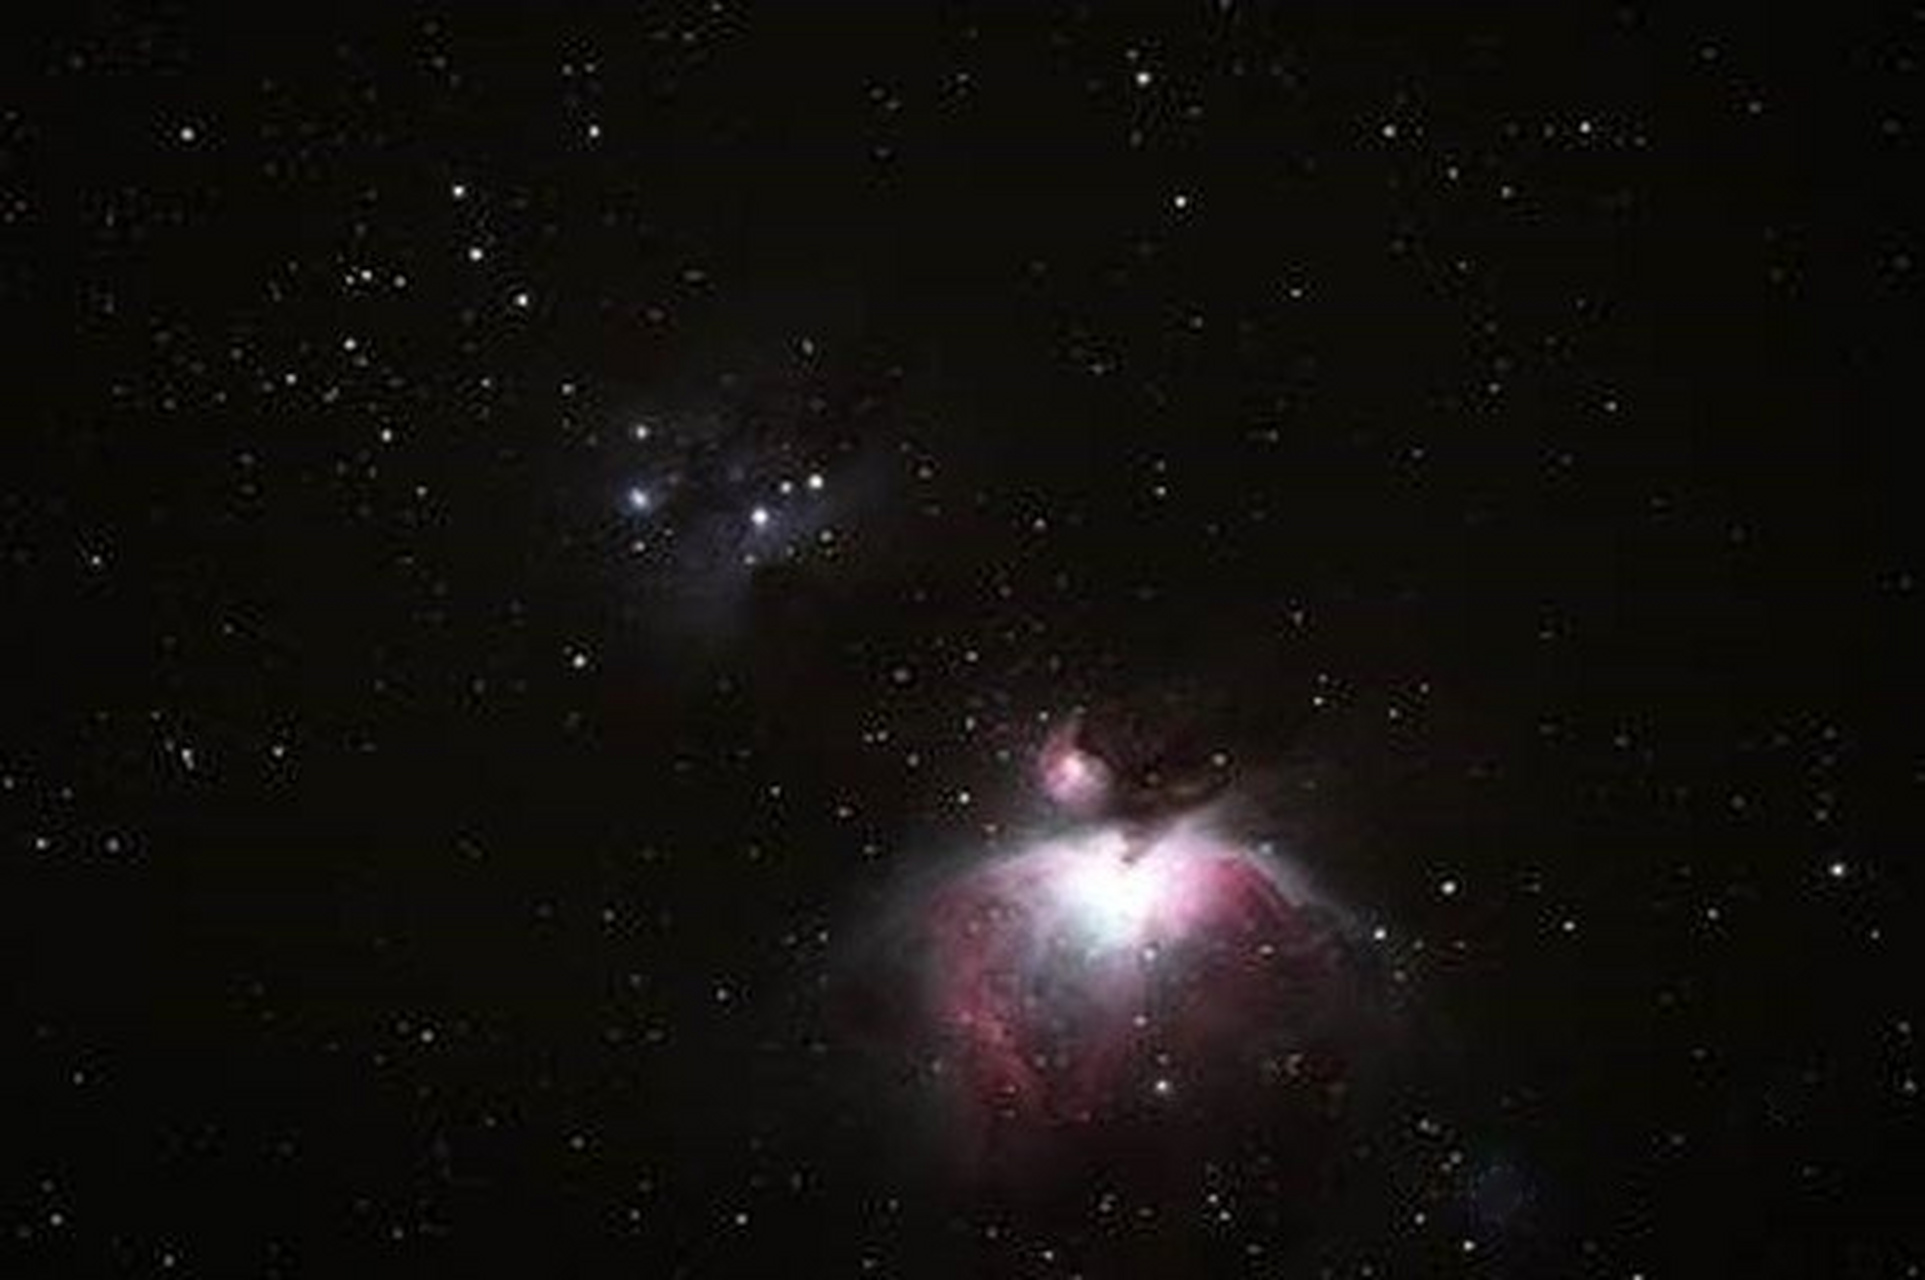 猎户座大星云(m42,ngc 1976)是一个位于猎户座的弥漫星云,距地球1344